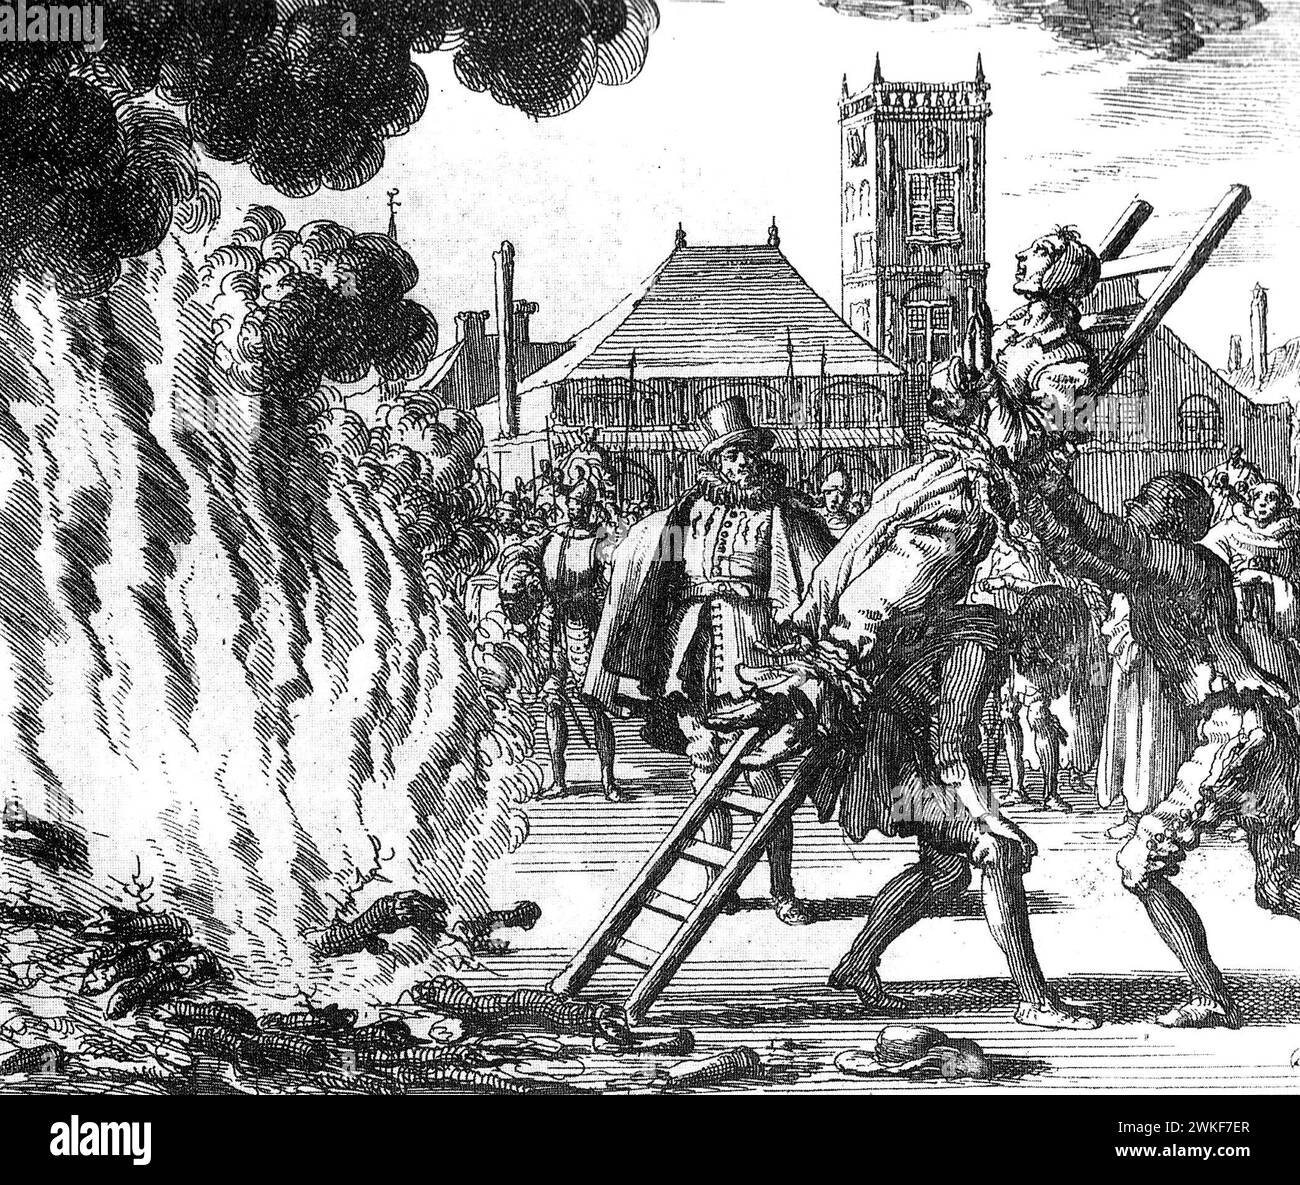 Spnish Inquisition. Anneken Hendriks, mennonite frison, brûlé en 1571 par l'Inquisition espagnole. Gravure de Jan Luyken, 1685 Banque D'Images